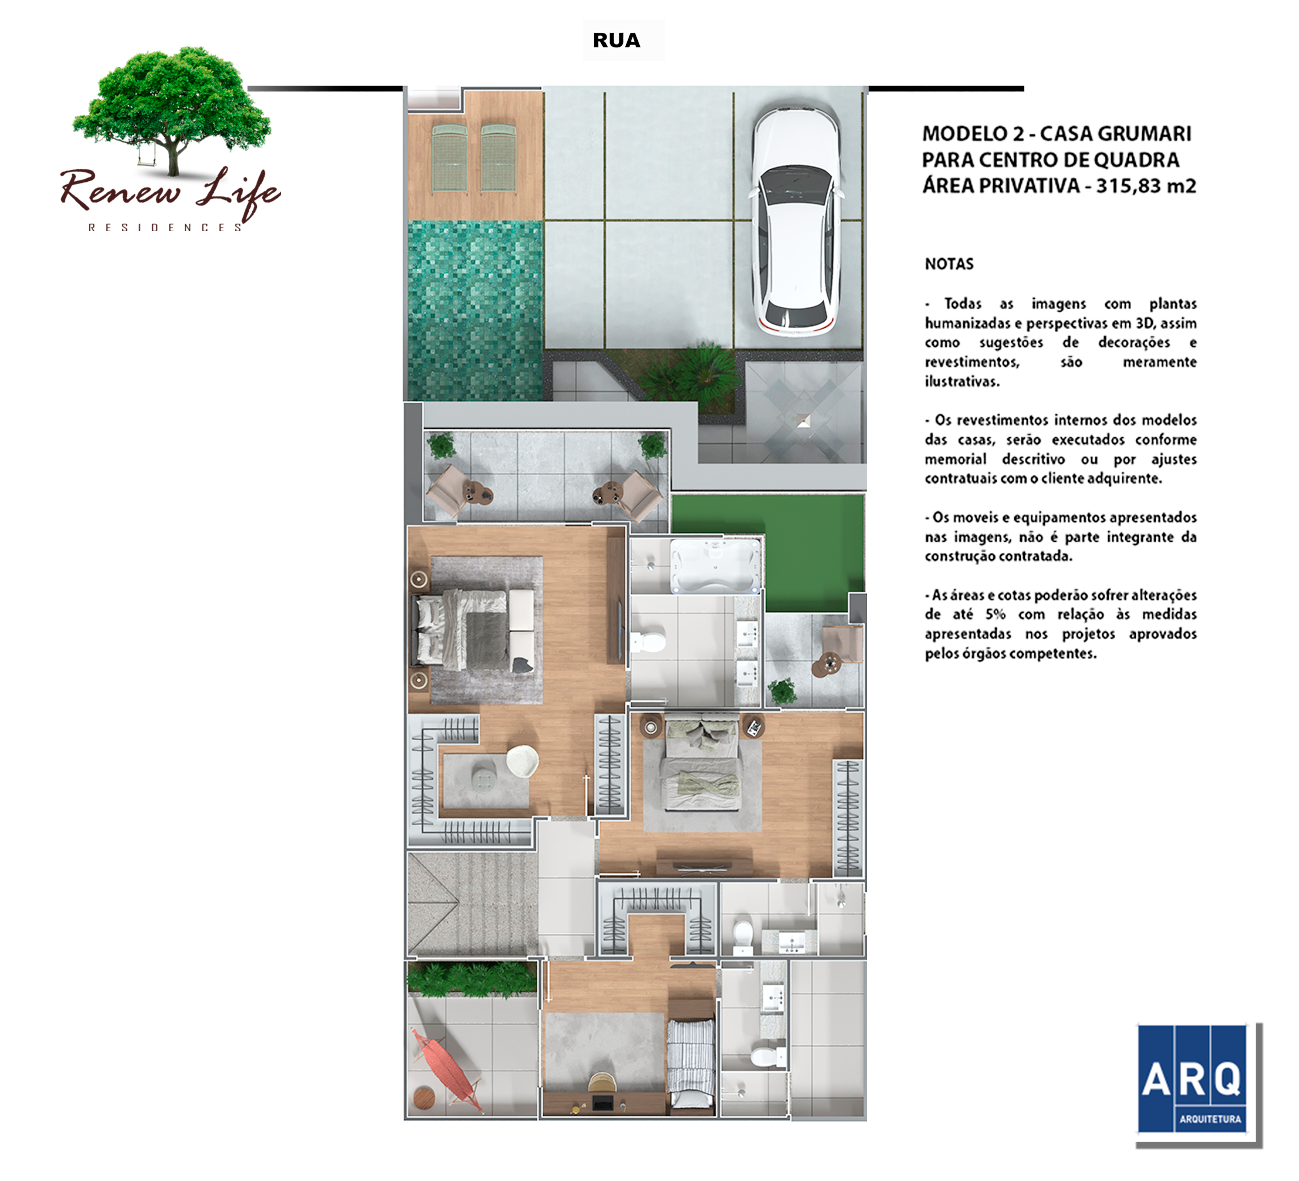 Renew-Life-Residences-Condominio-de-casas-Recreio-casa-Grumari-segundo-piso